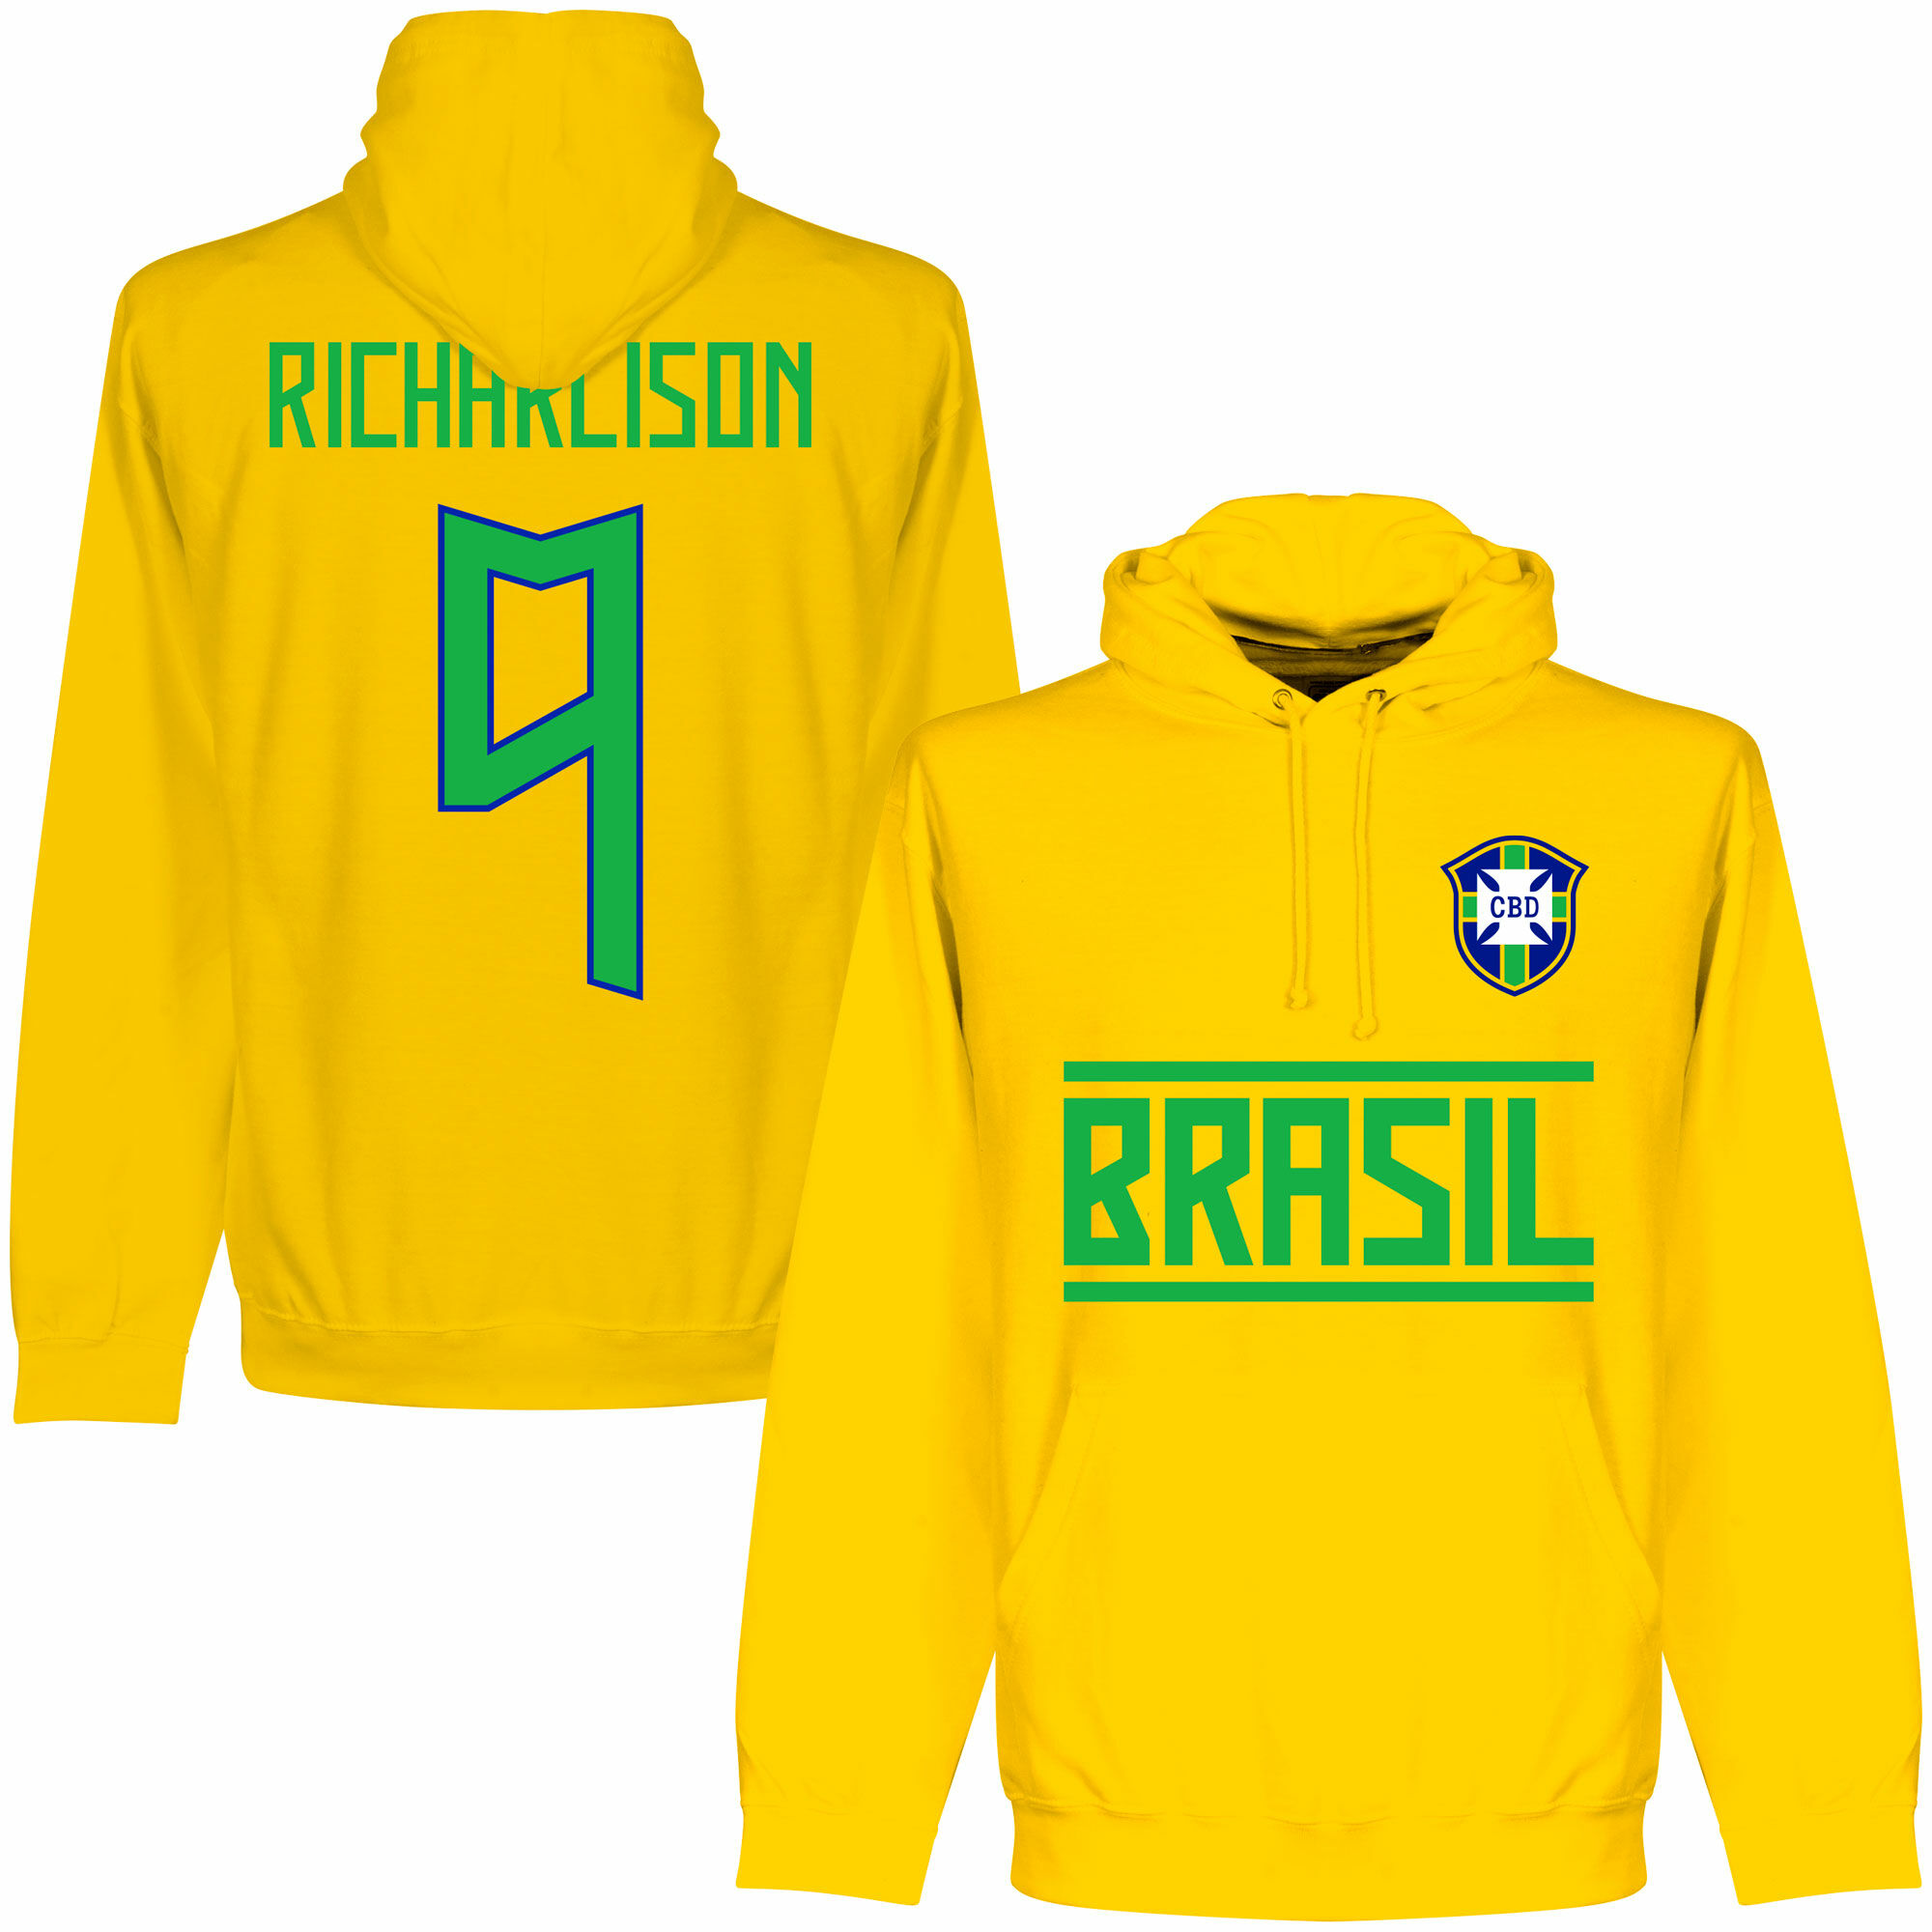 Brazílie - Mikina s kapucí - Richarlison, žlutá, číslo 9